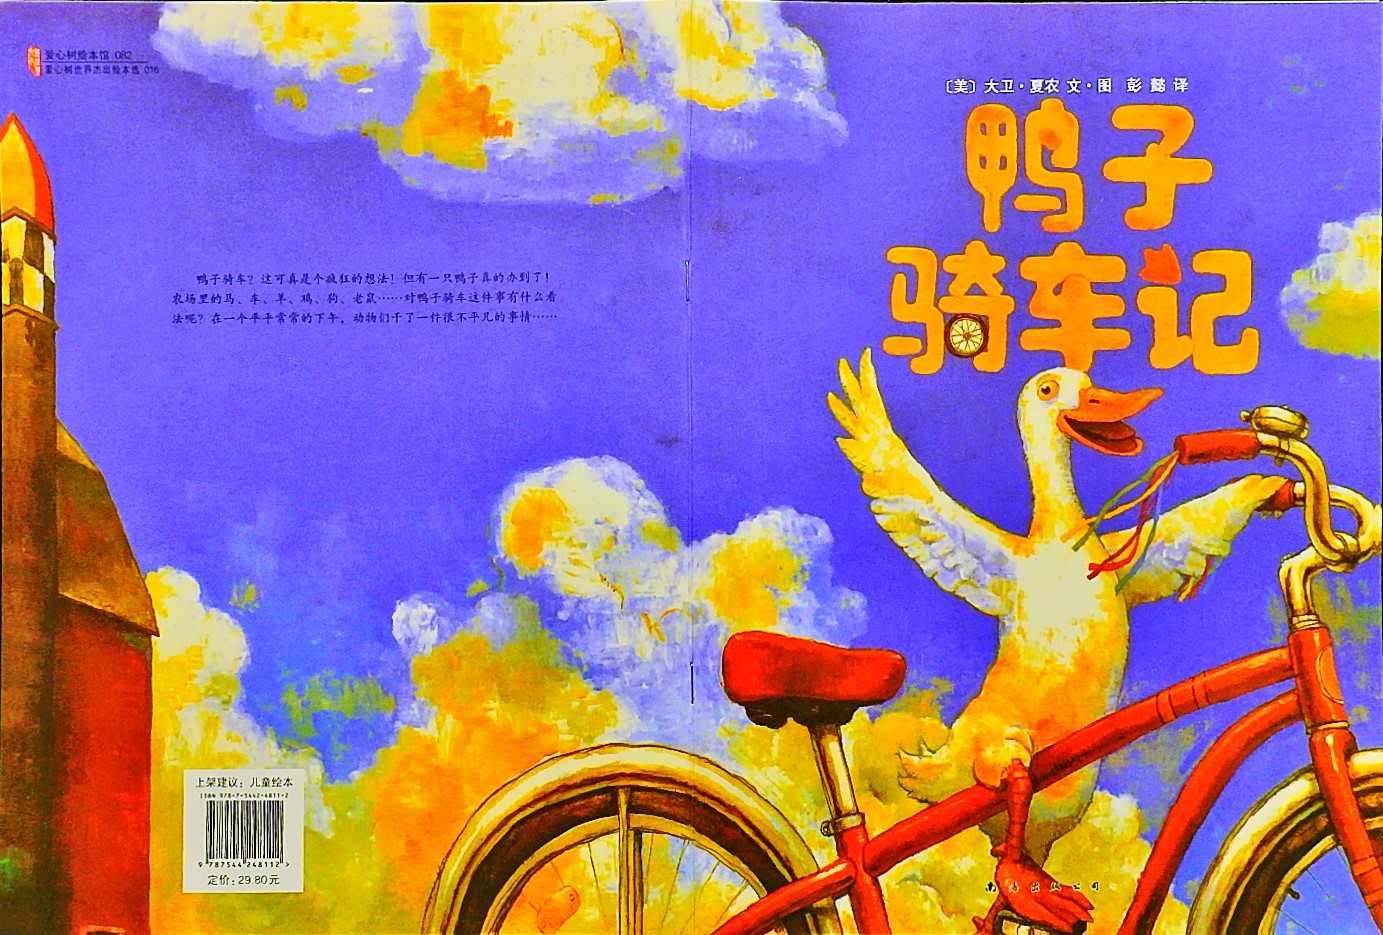 鸭子骑车记 (01),绘本,绘本故事,绘本阅读,故事书,童书,图画书,课外阅读